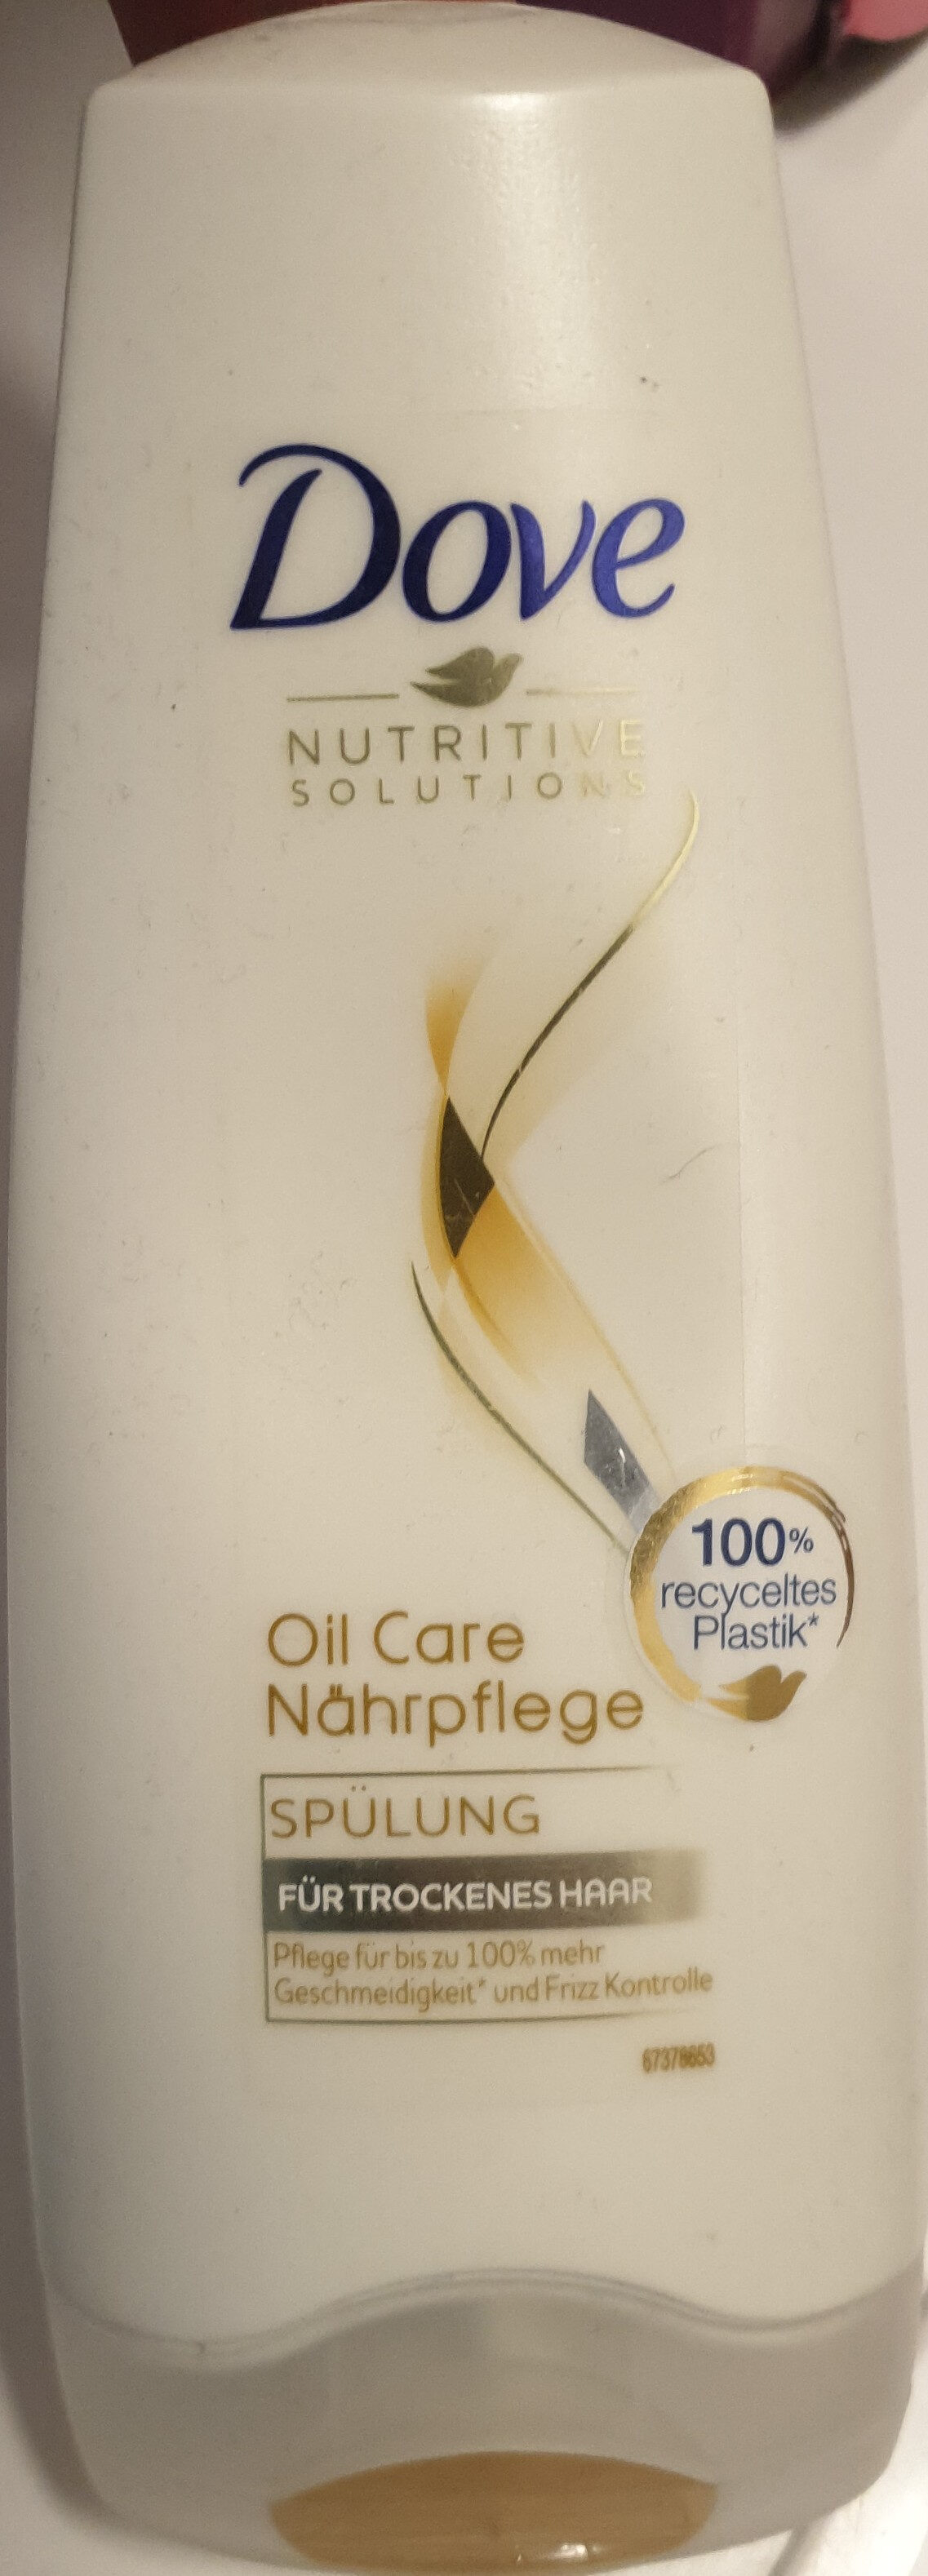 Oil Care Nährpflege - Product - de